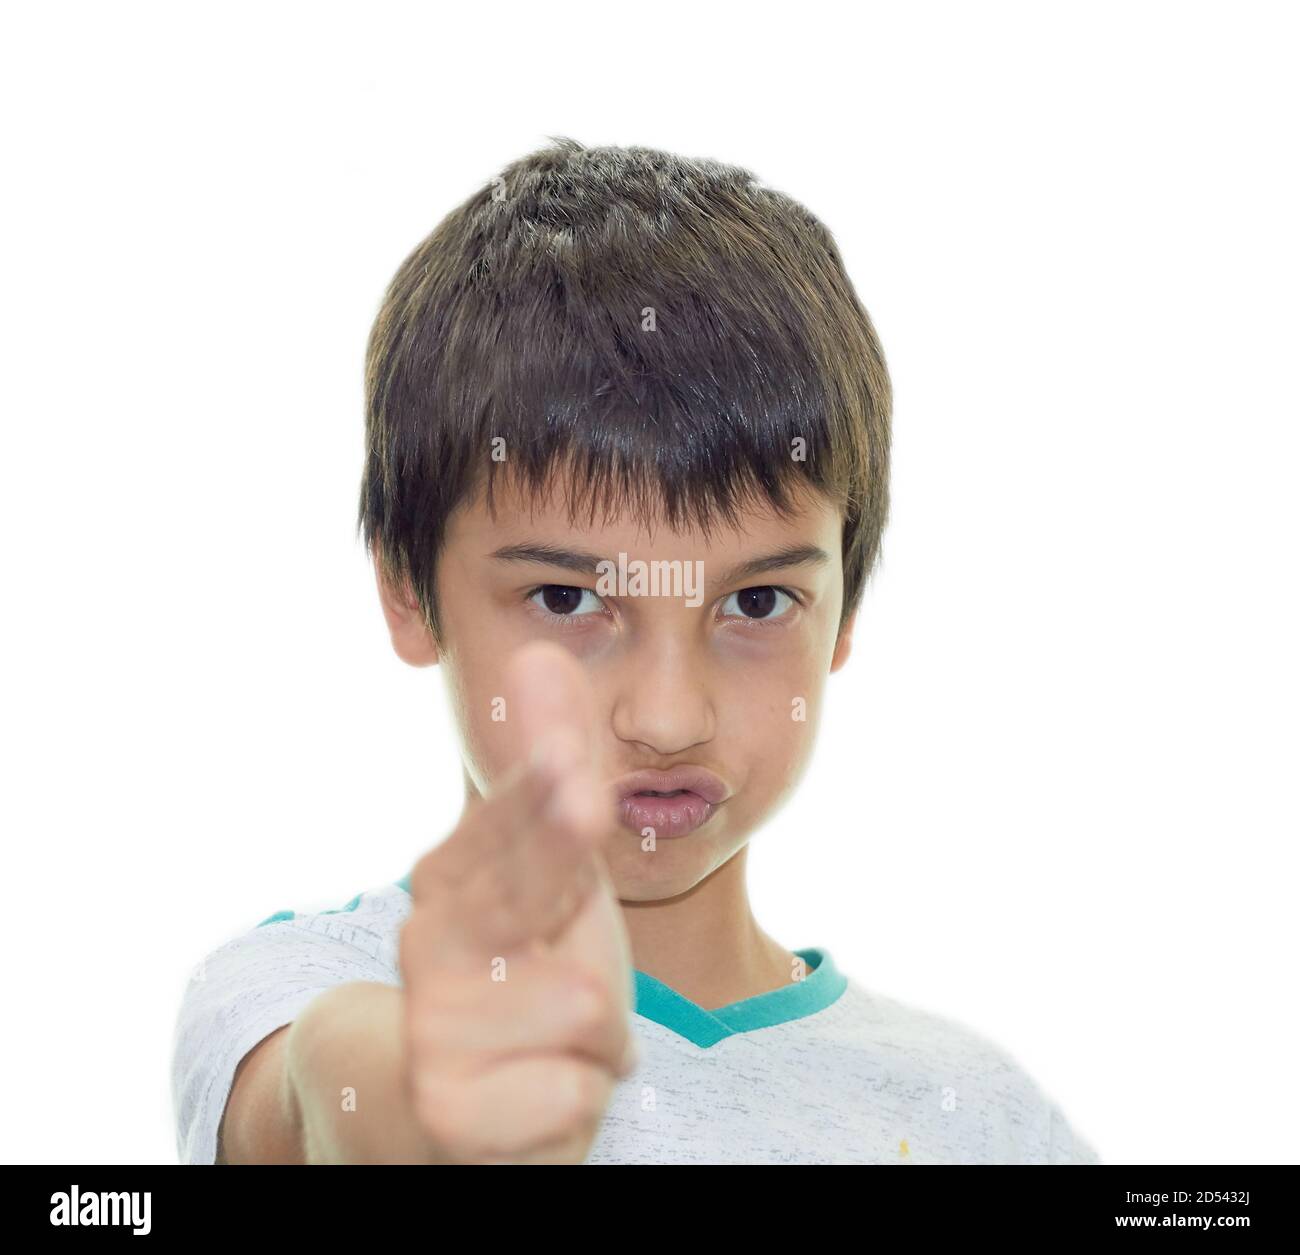 Selbstbewusster Junge schießt den Finger auf die Kamera. Stockfoto